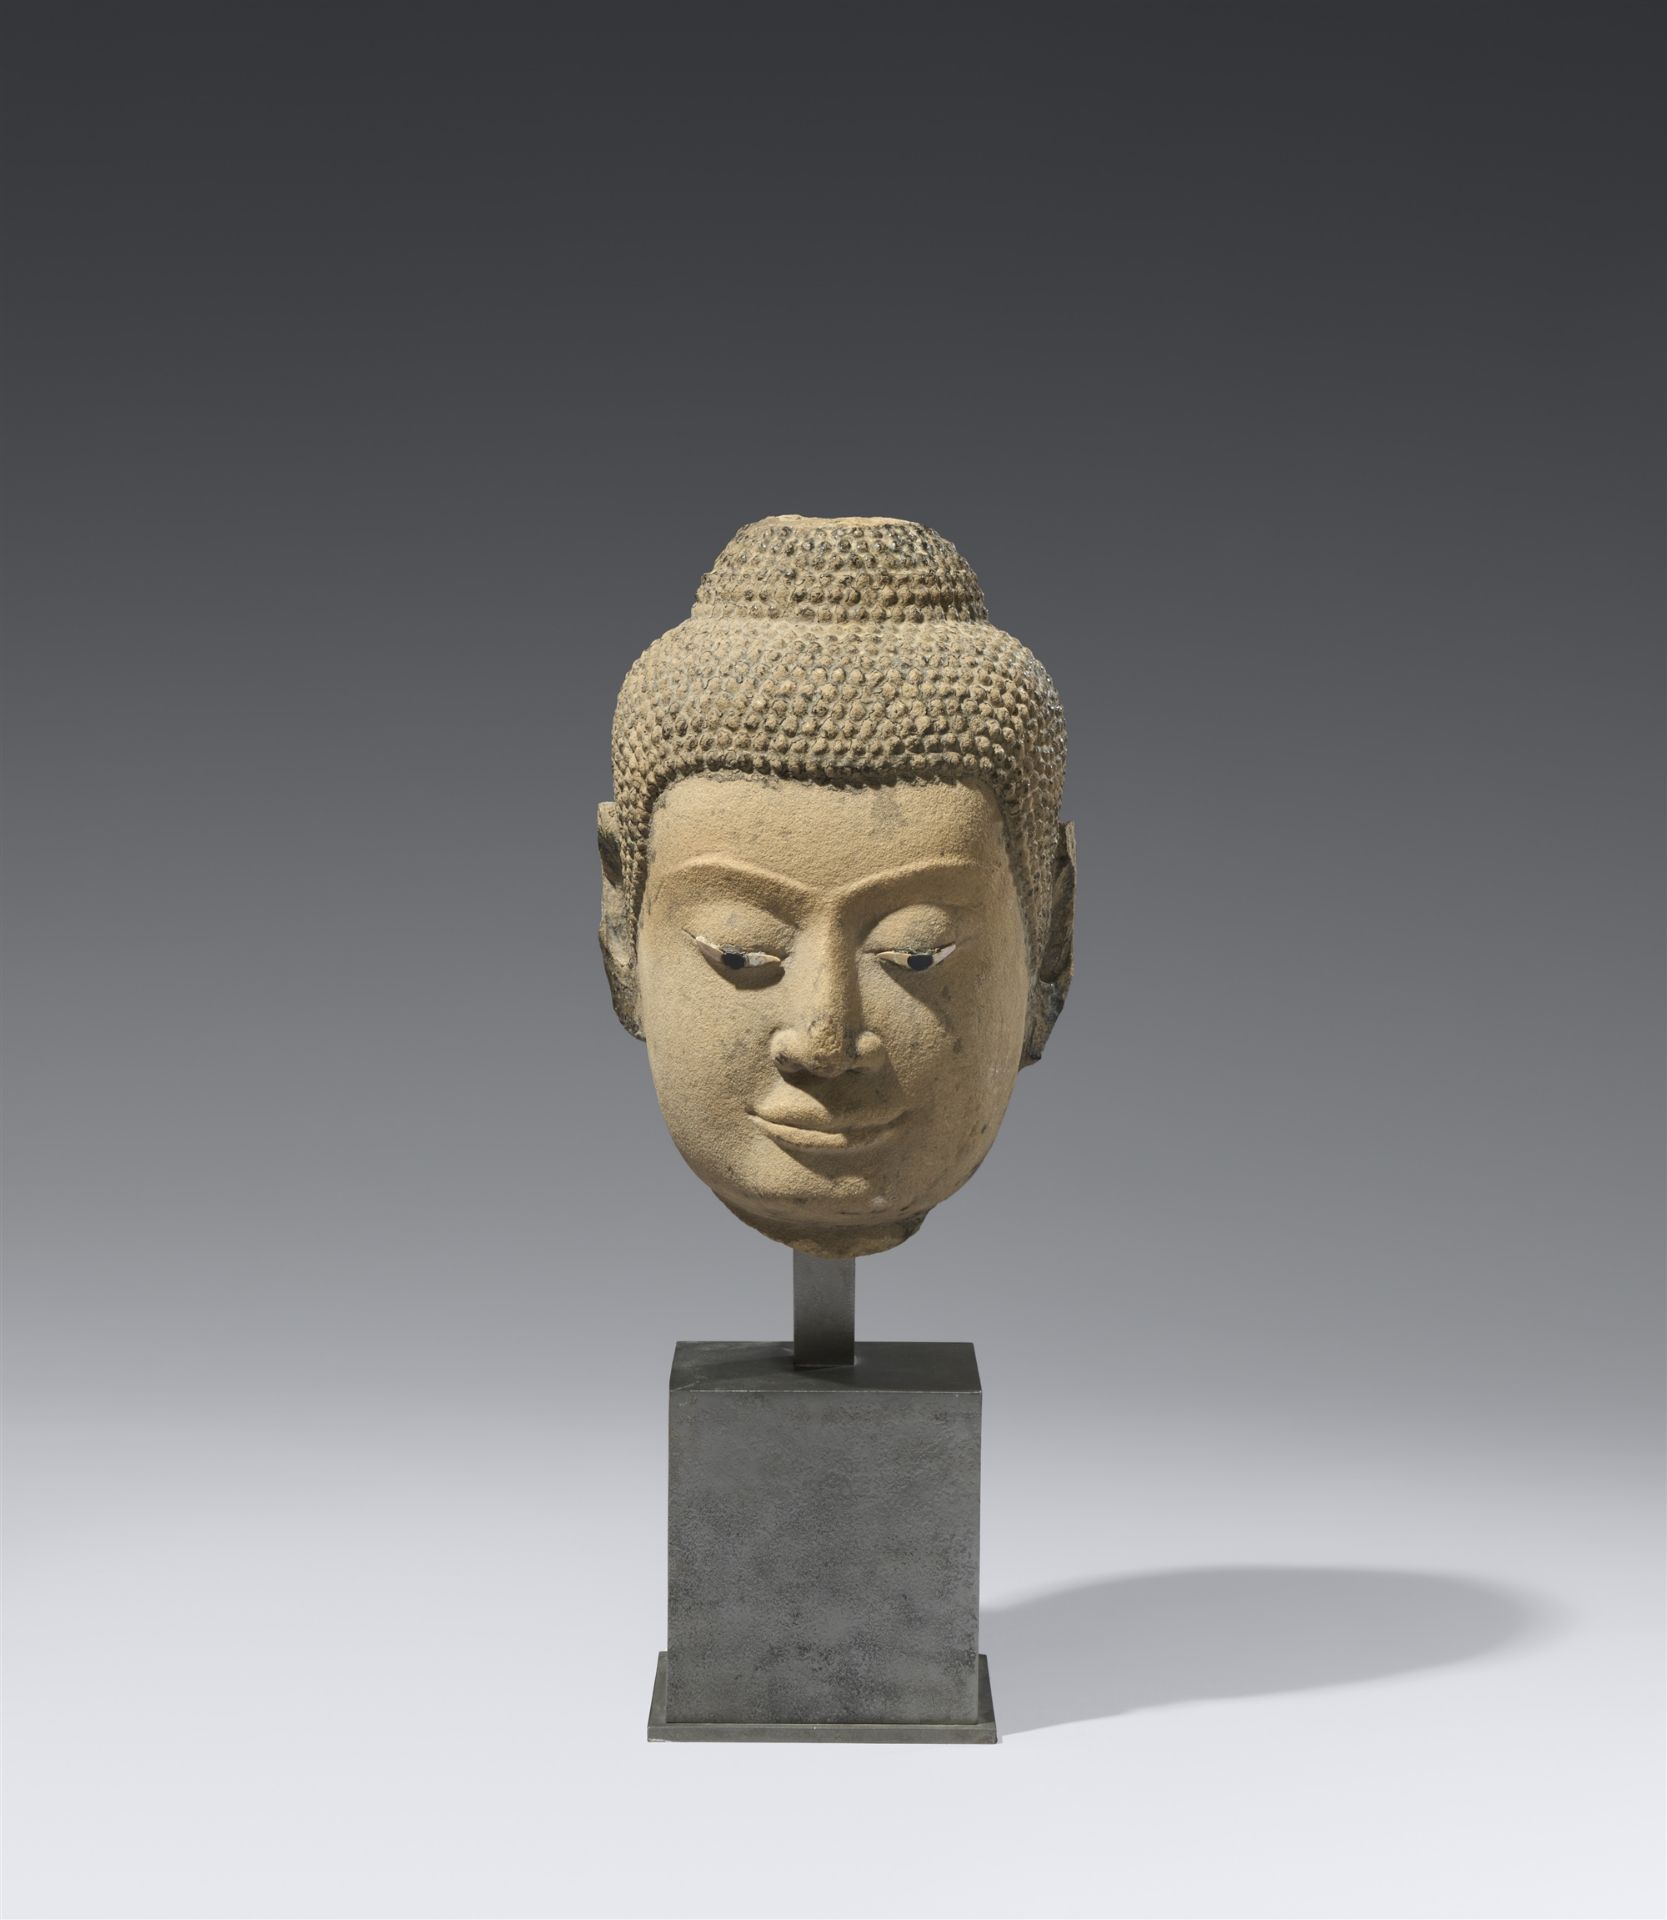 Kopf eines Buddha. Sandstein. Thailand, Ayutthaya. 15. Jh.